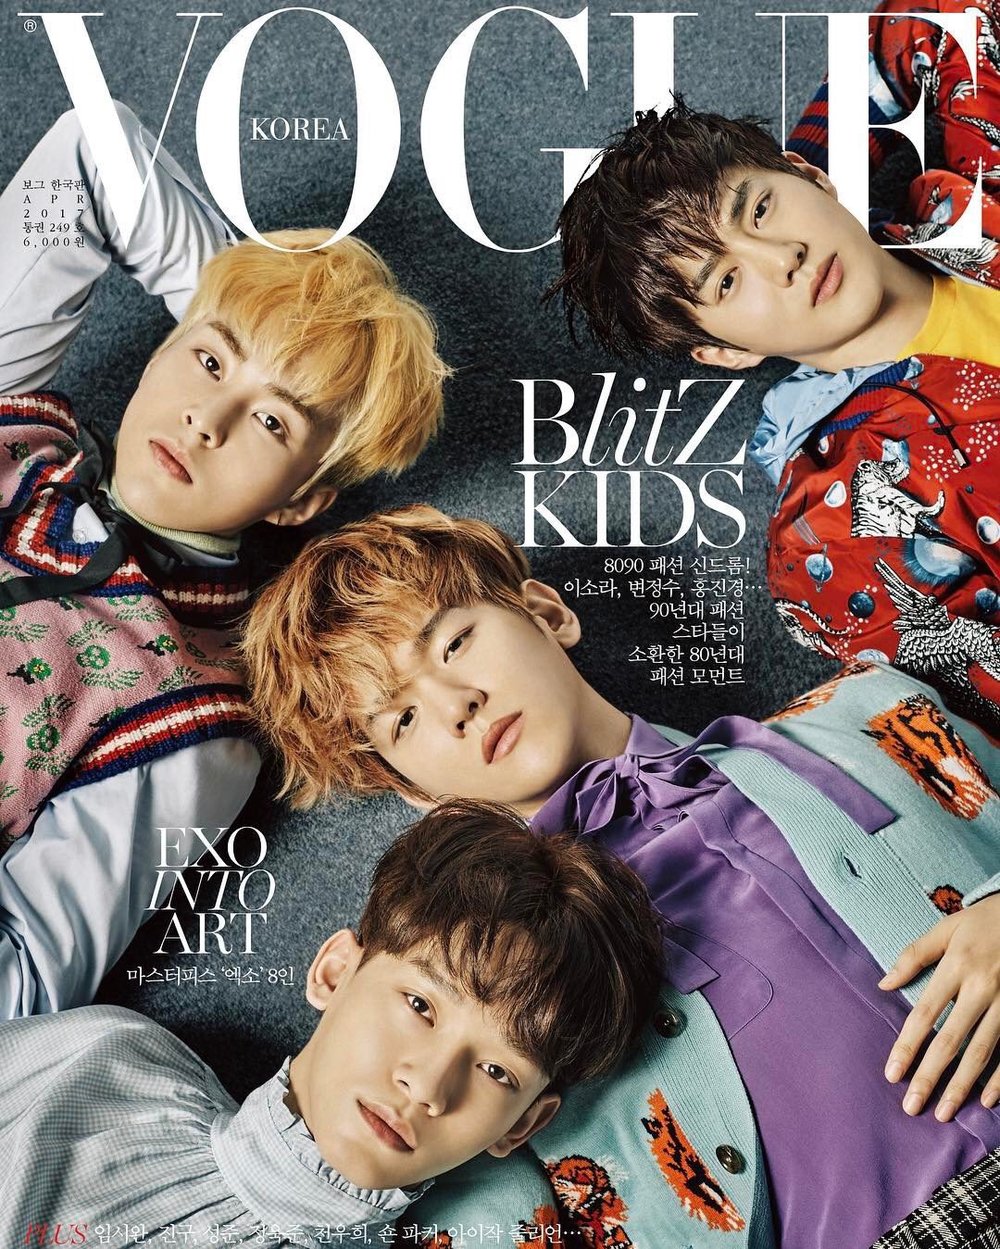  
Sau 5 năm ra mắt, 8 thành viên EXO đã cùng chia nhau xuất hiện trên bìa đôi của Vogue Hàn Quốc. (Ảnh: Vogue Korea)